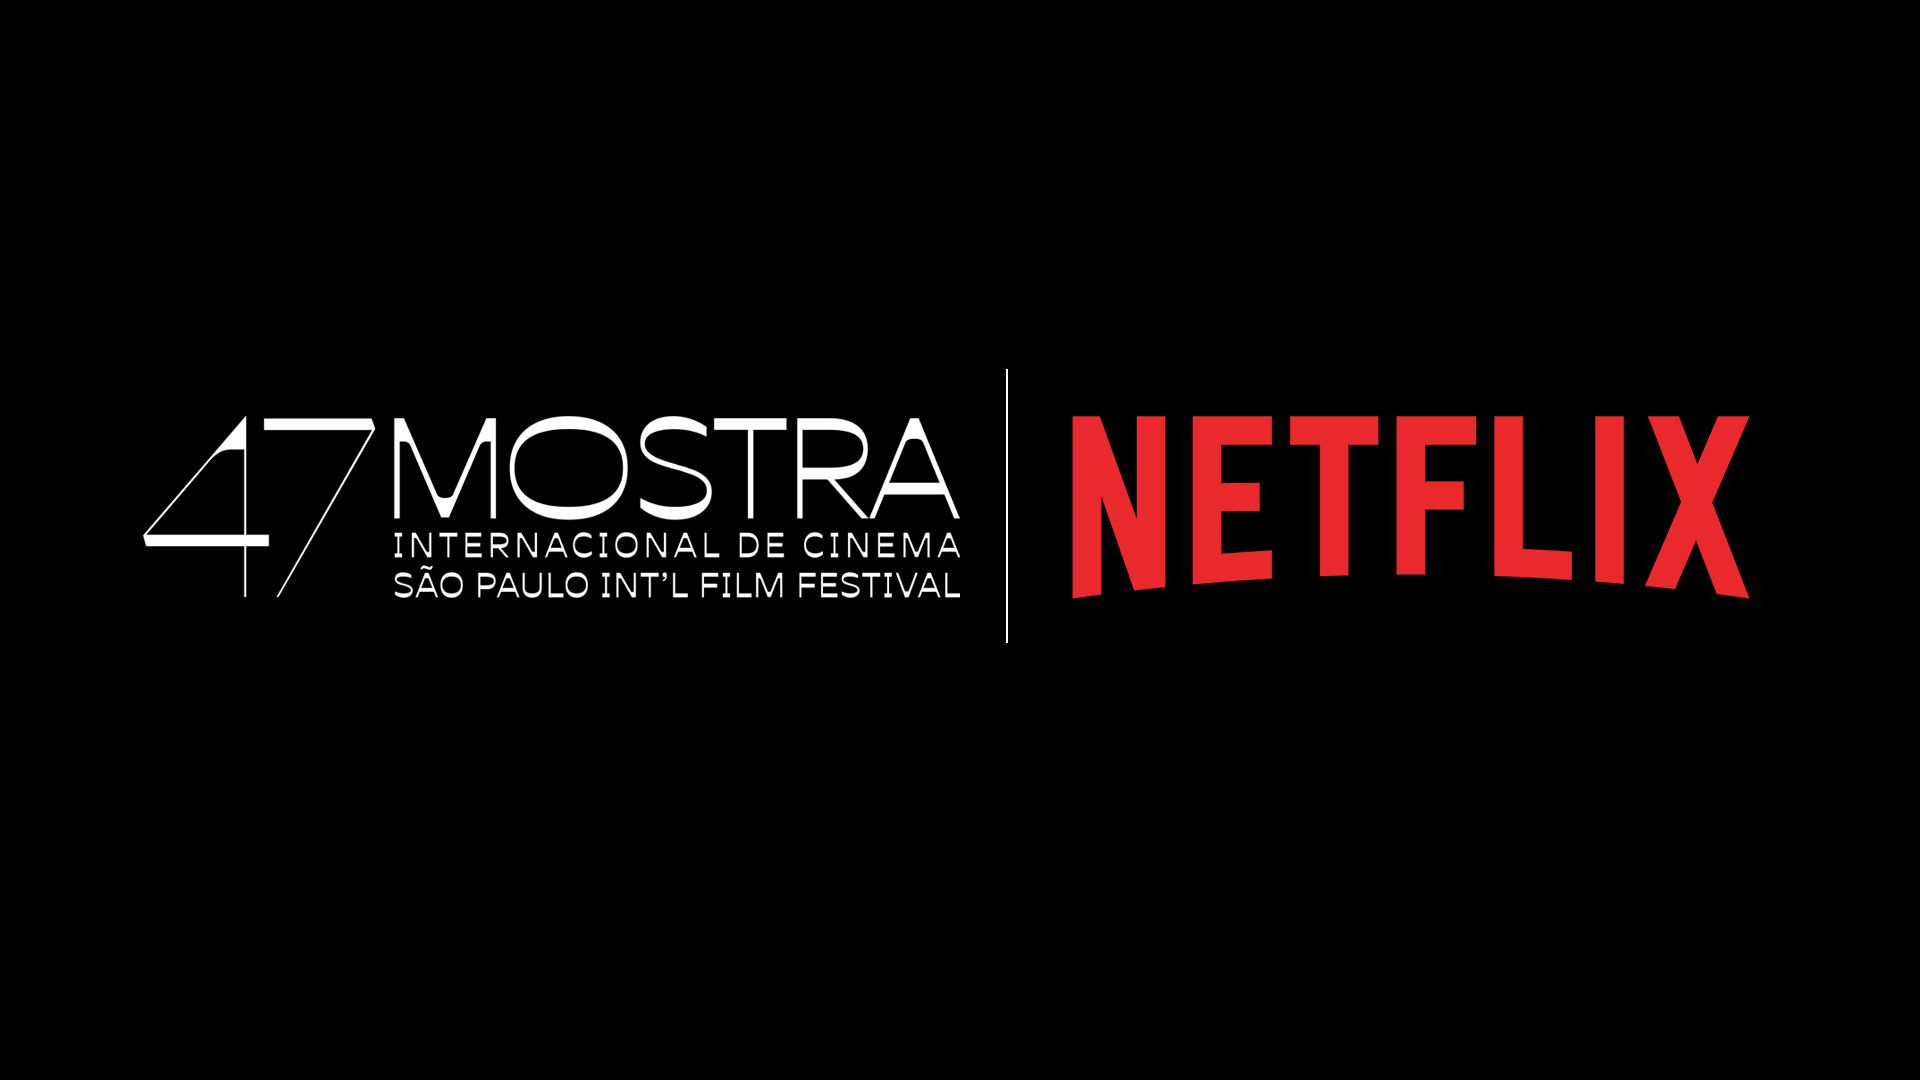 Filmes da Netflix em 2023: serviço anuncia datas de lançamentos